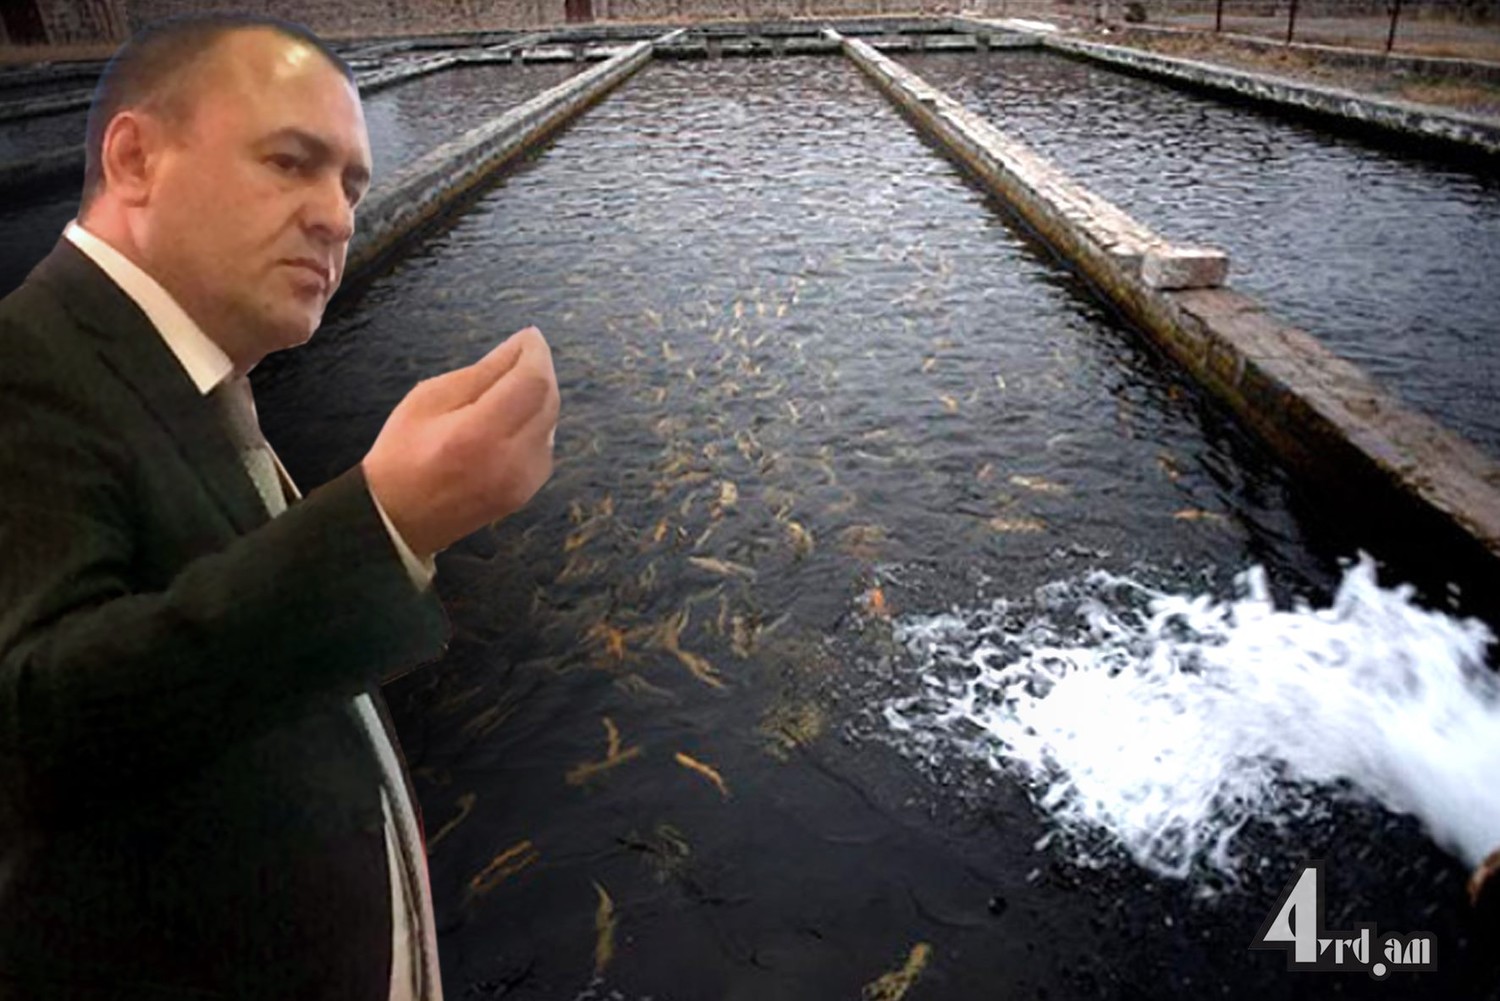 Ձկնաբույծները կդիմեն վարչապետին